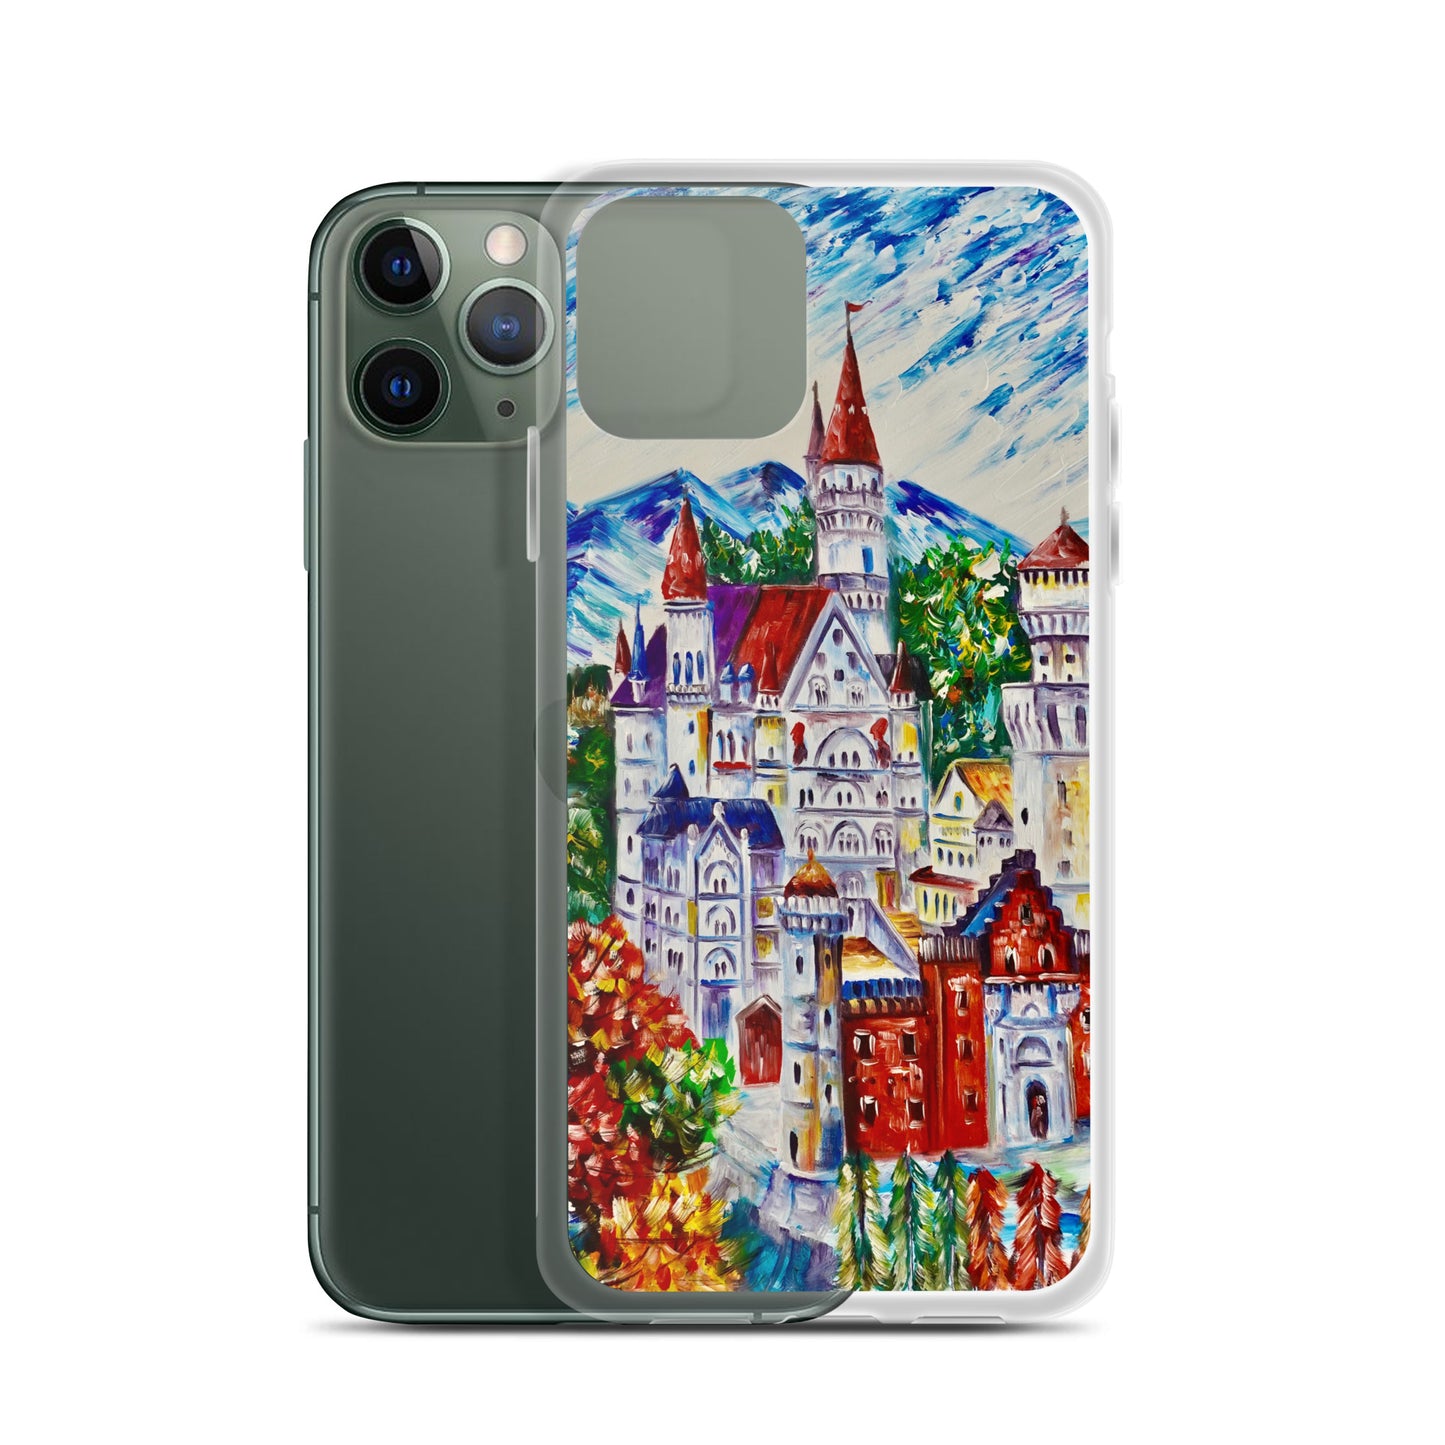 Neuschwanstein castle iPhone case